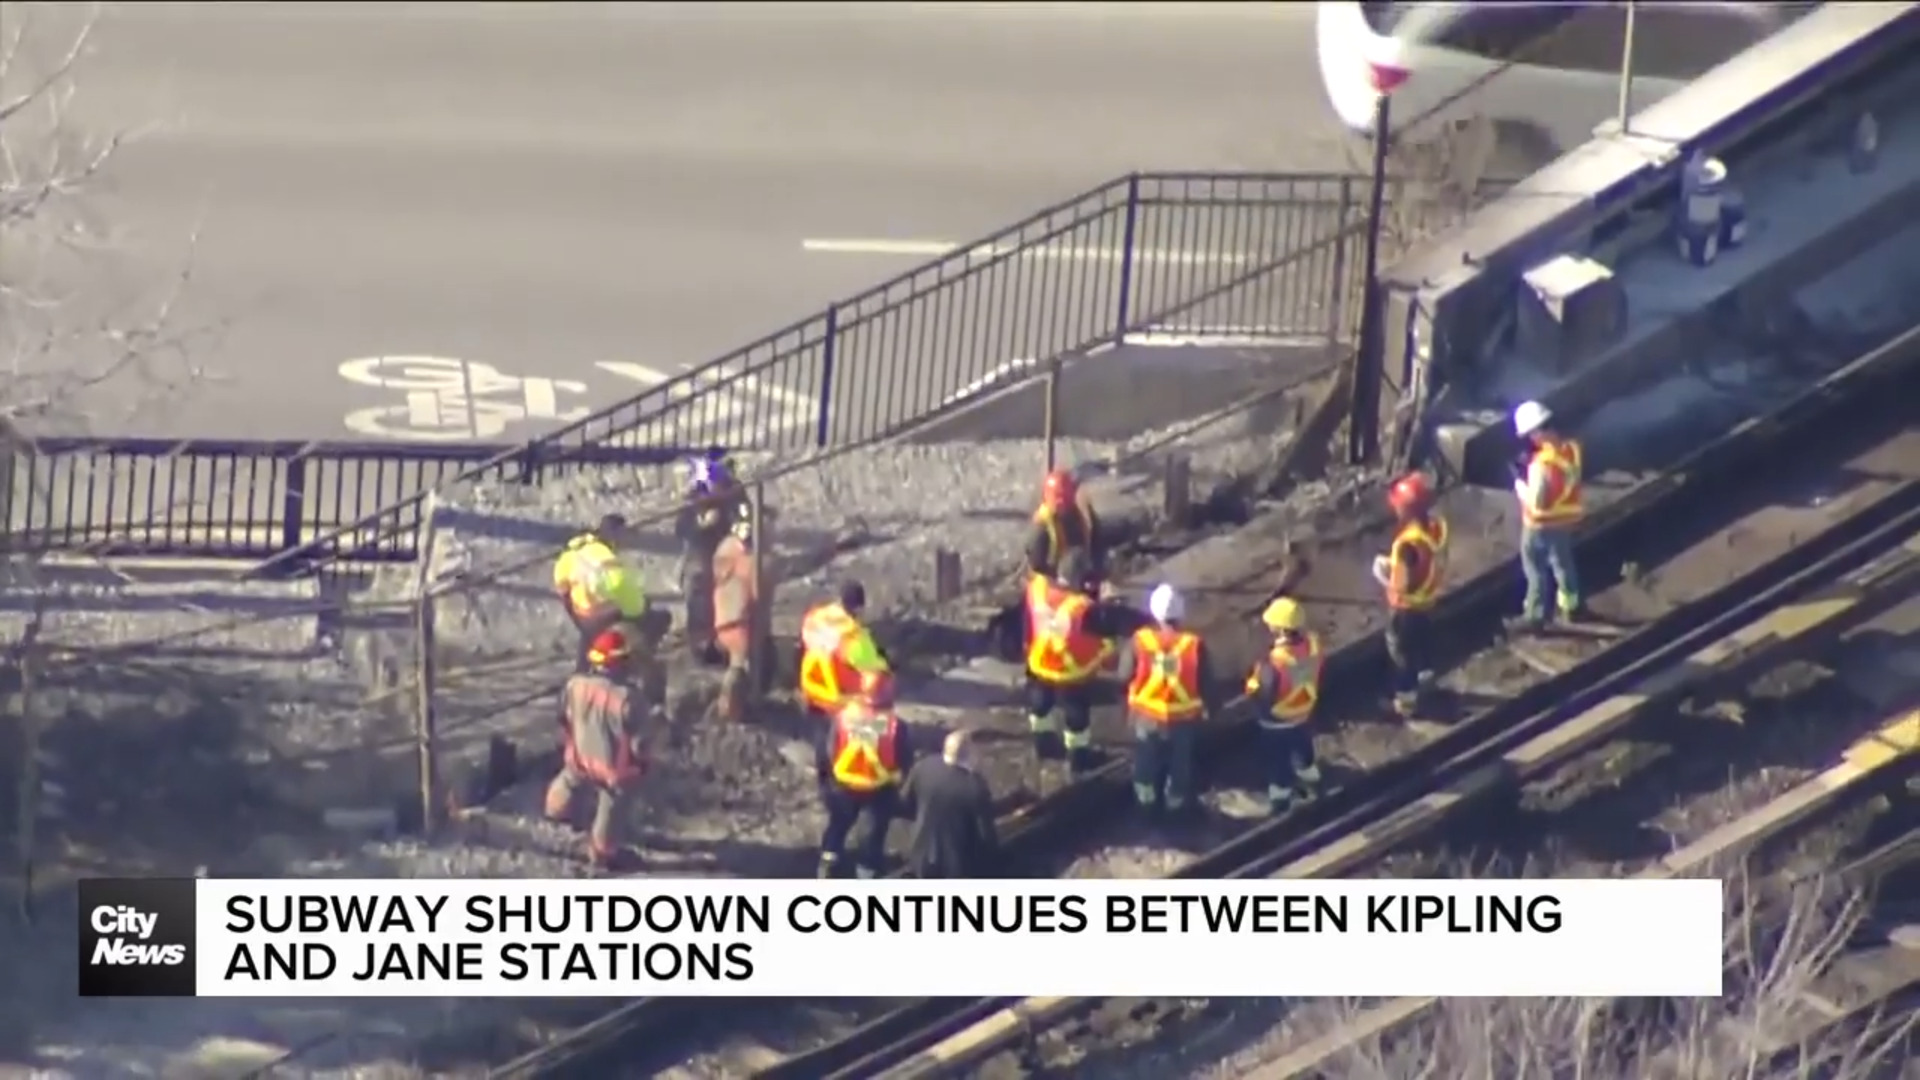 Subway shutdown continues between Kipling and Jane stations